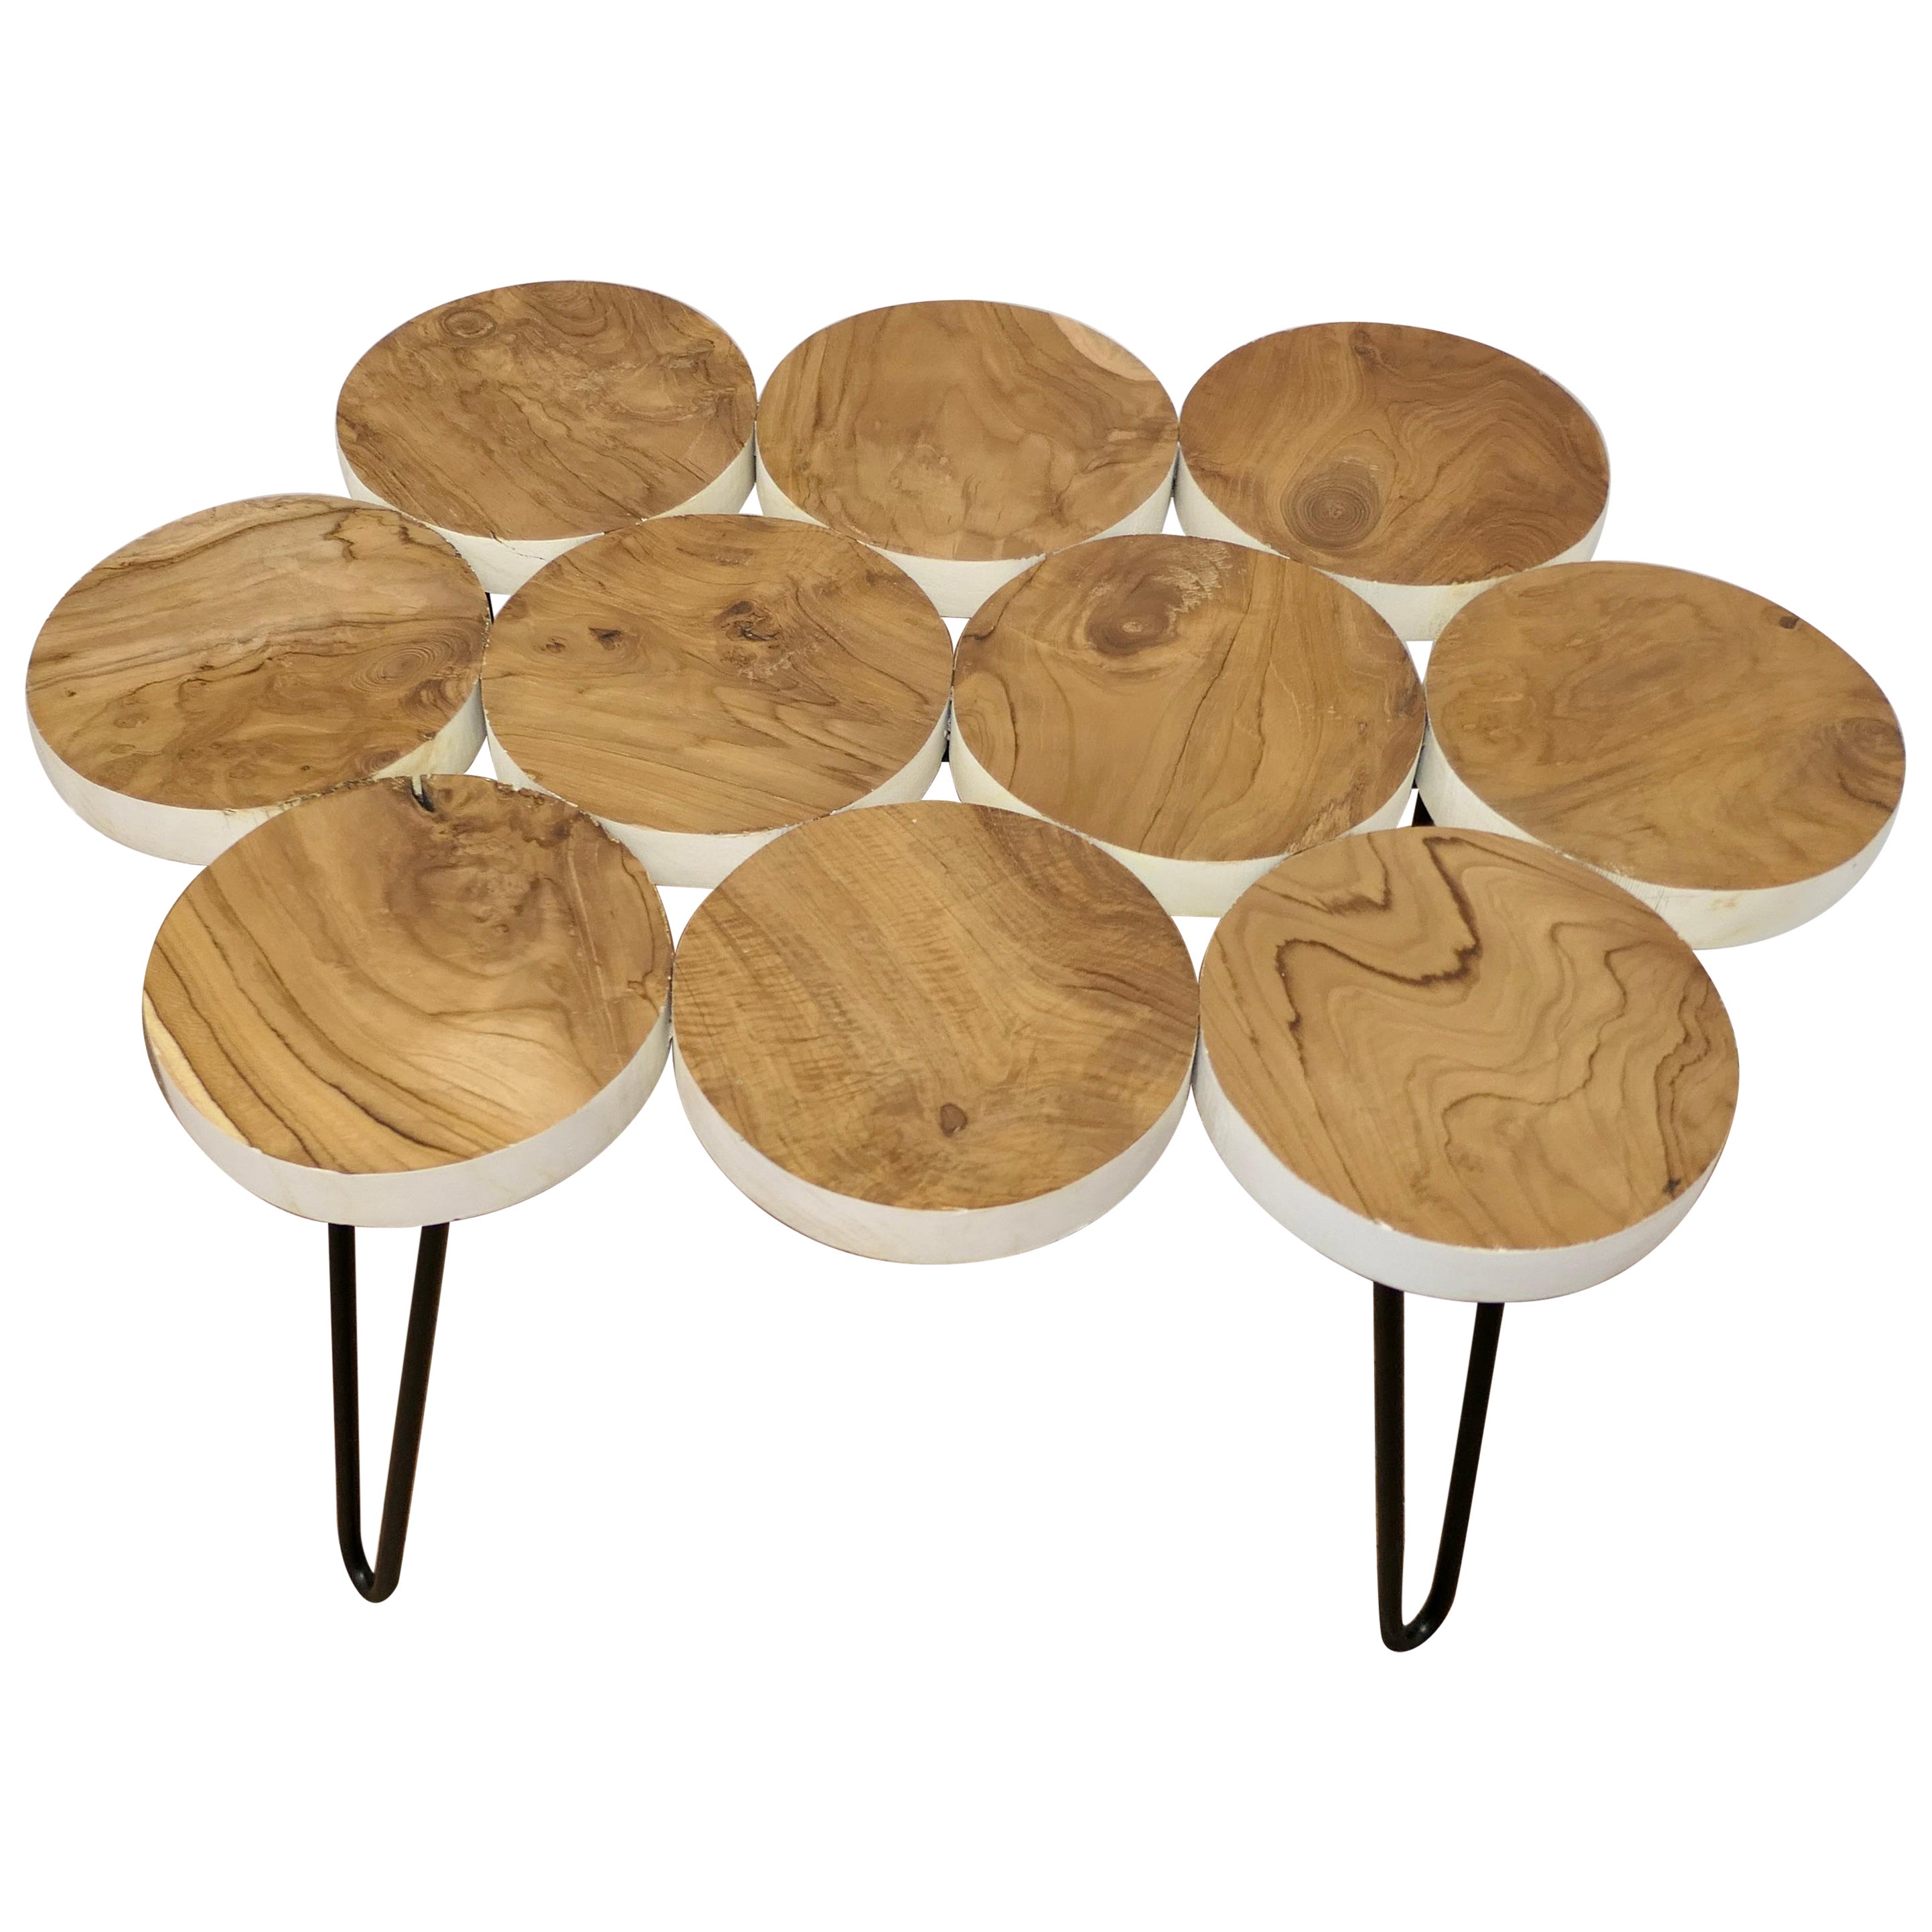 Wonderful Midcentury Folk Art Olive Wood Table For Sale